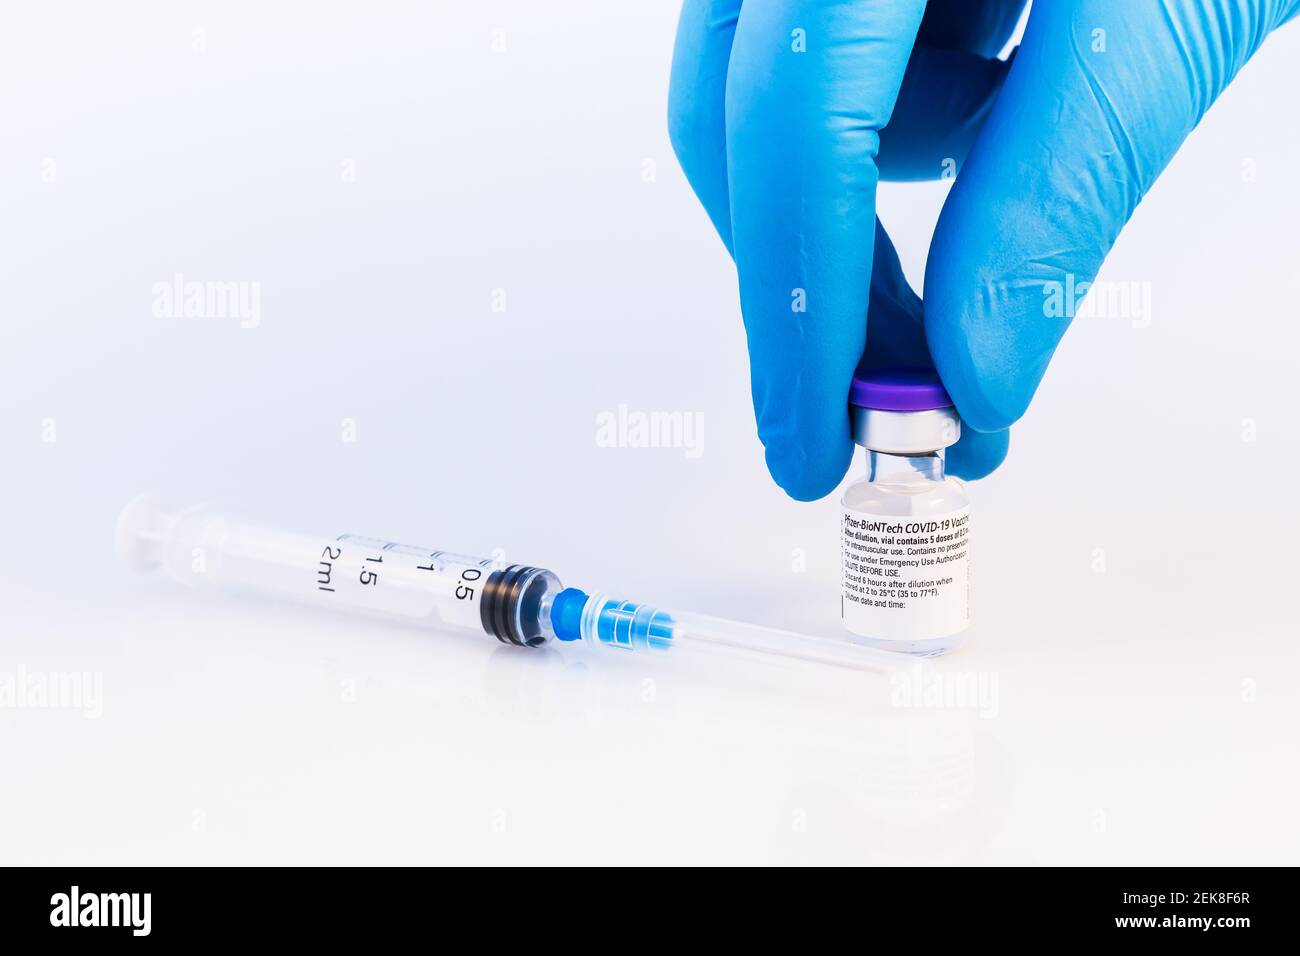 Brasov, Rumania - 21 de febrero de 2021: Médico o científico que sostiene la vacuna Pfizer-BioNTech Covid-19 sobre fondo blanco. Foto de stock